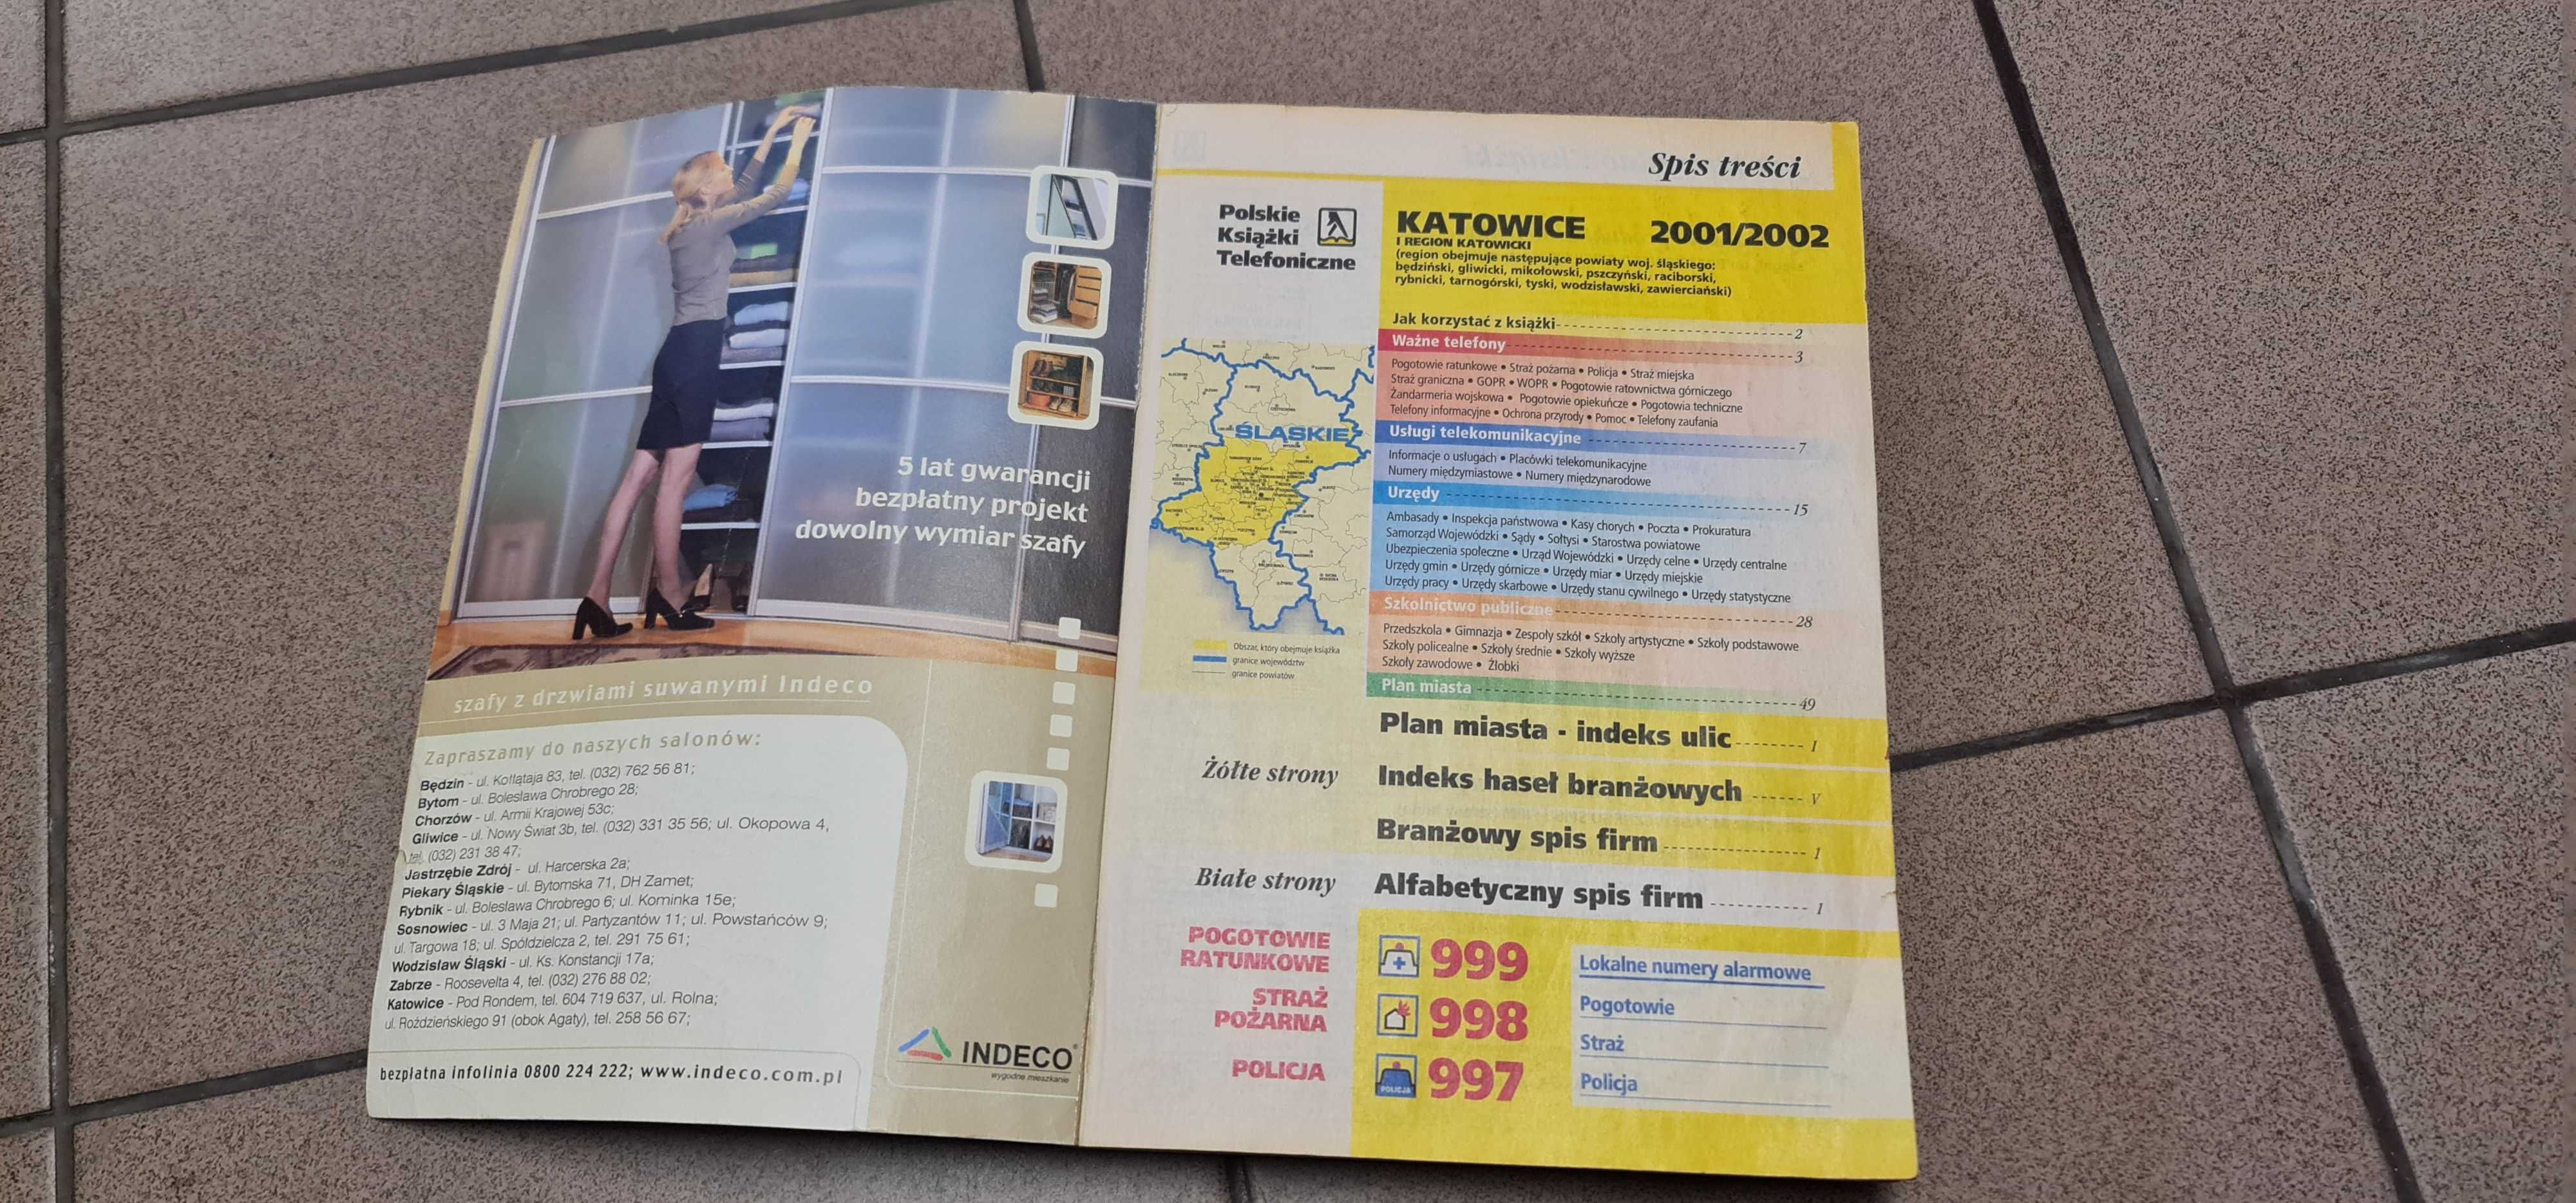 Książka telefoniczna zabytek 2001 Polskie Książki telefoniczne 2002